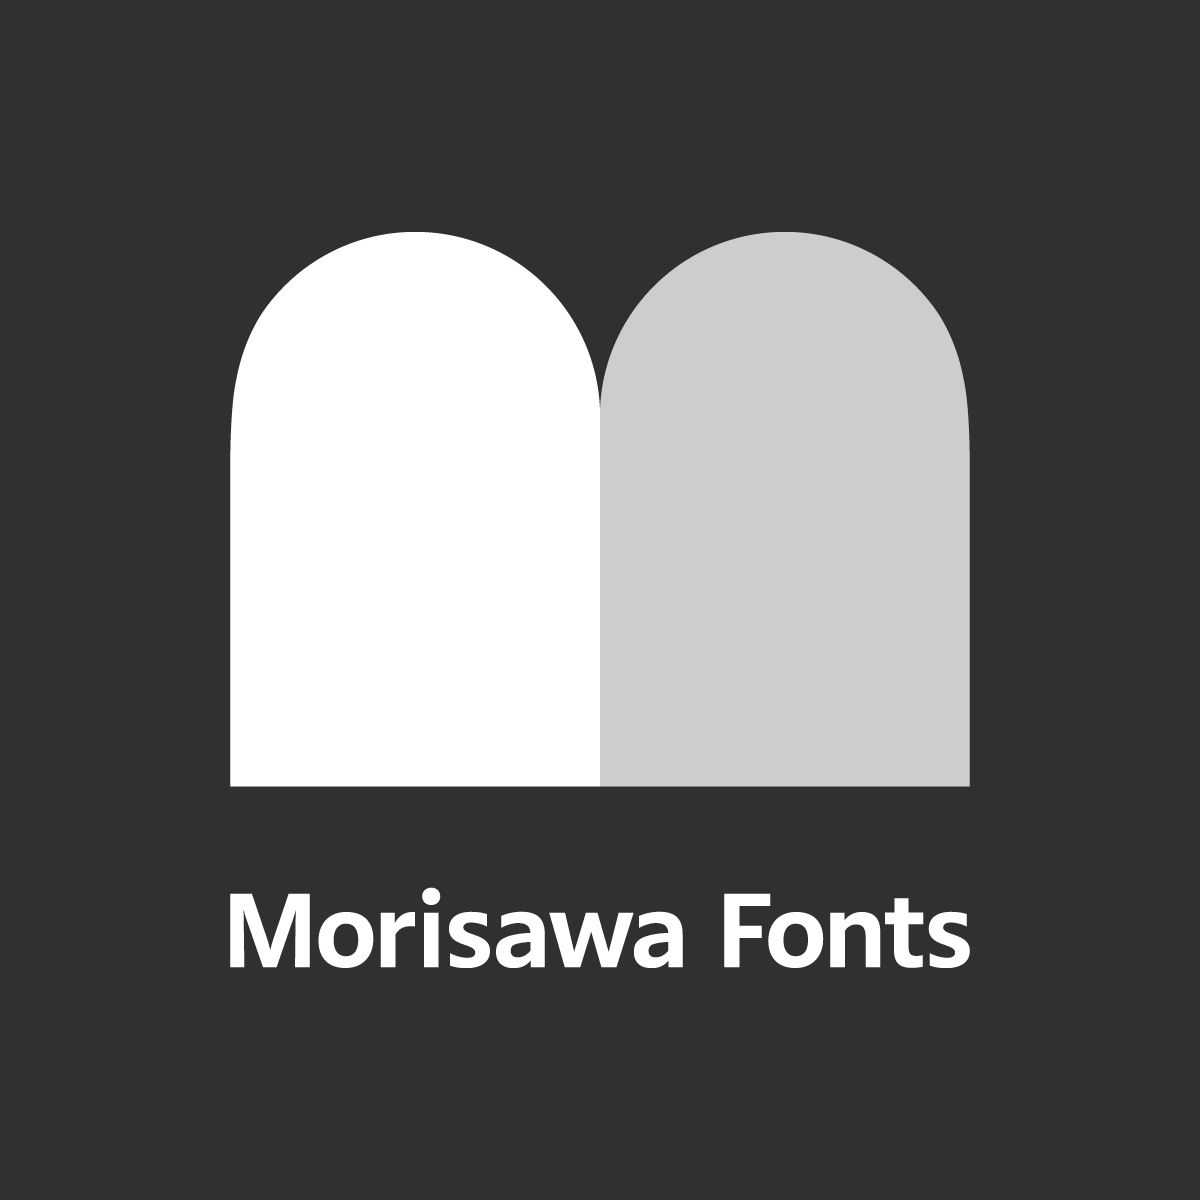 Morisawa Fonts ロゴ3 モノクロ2